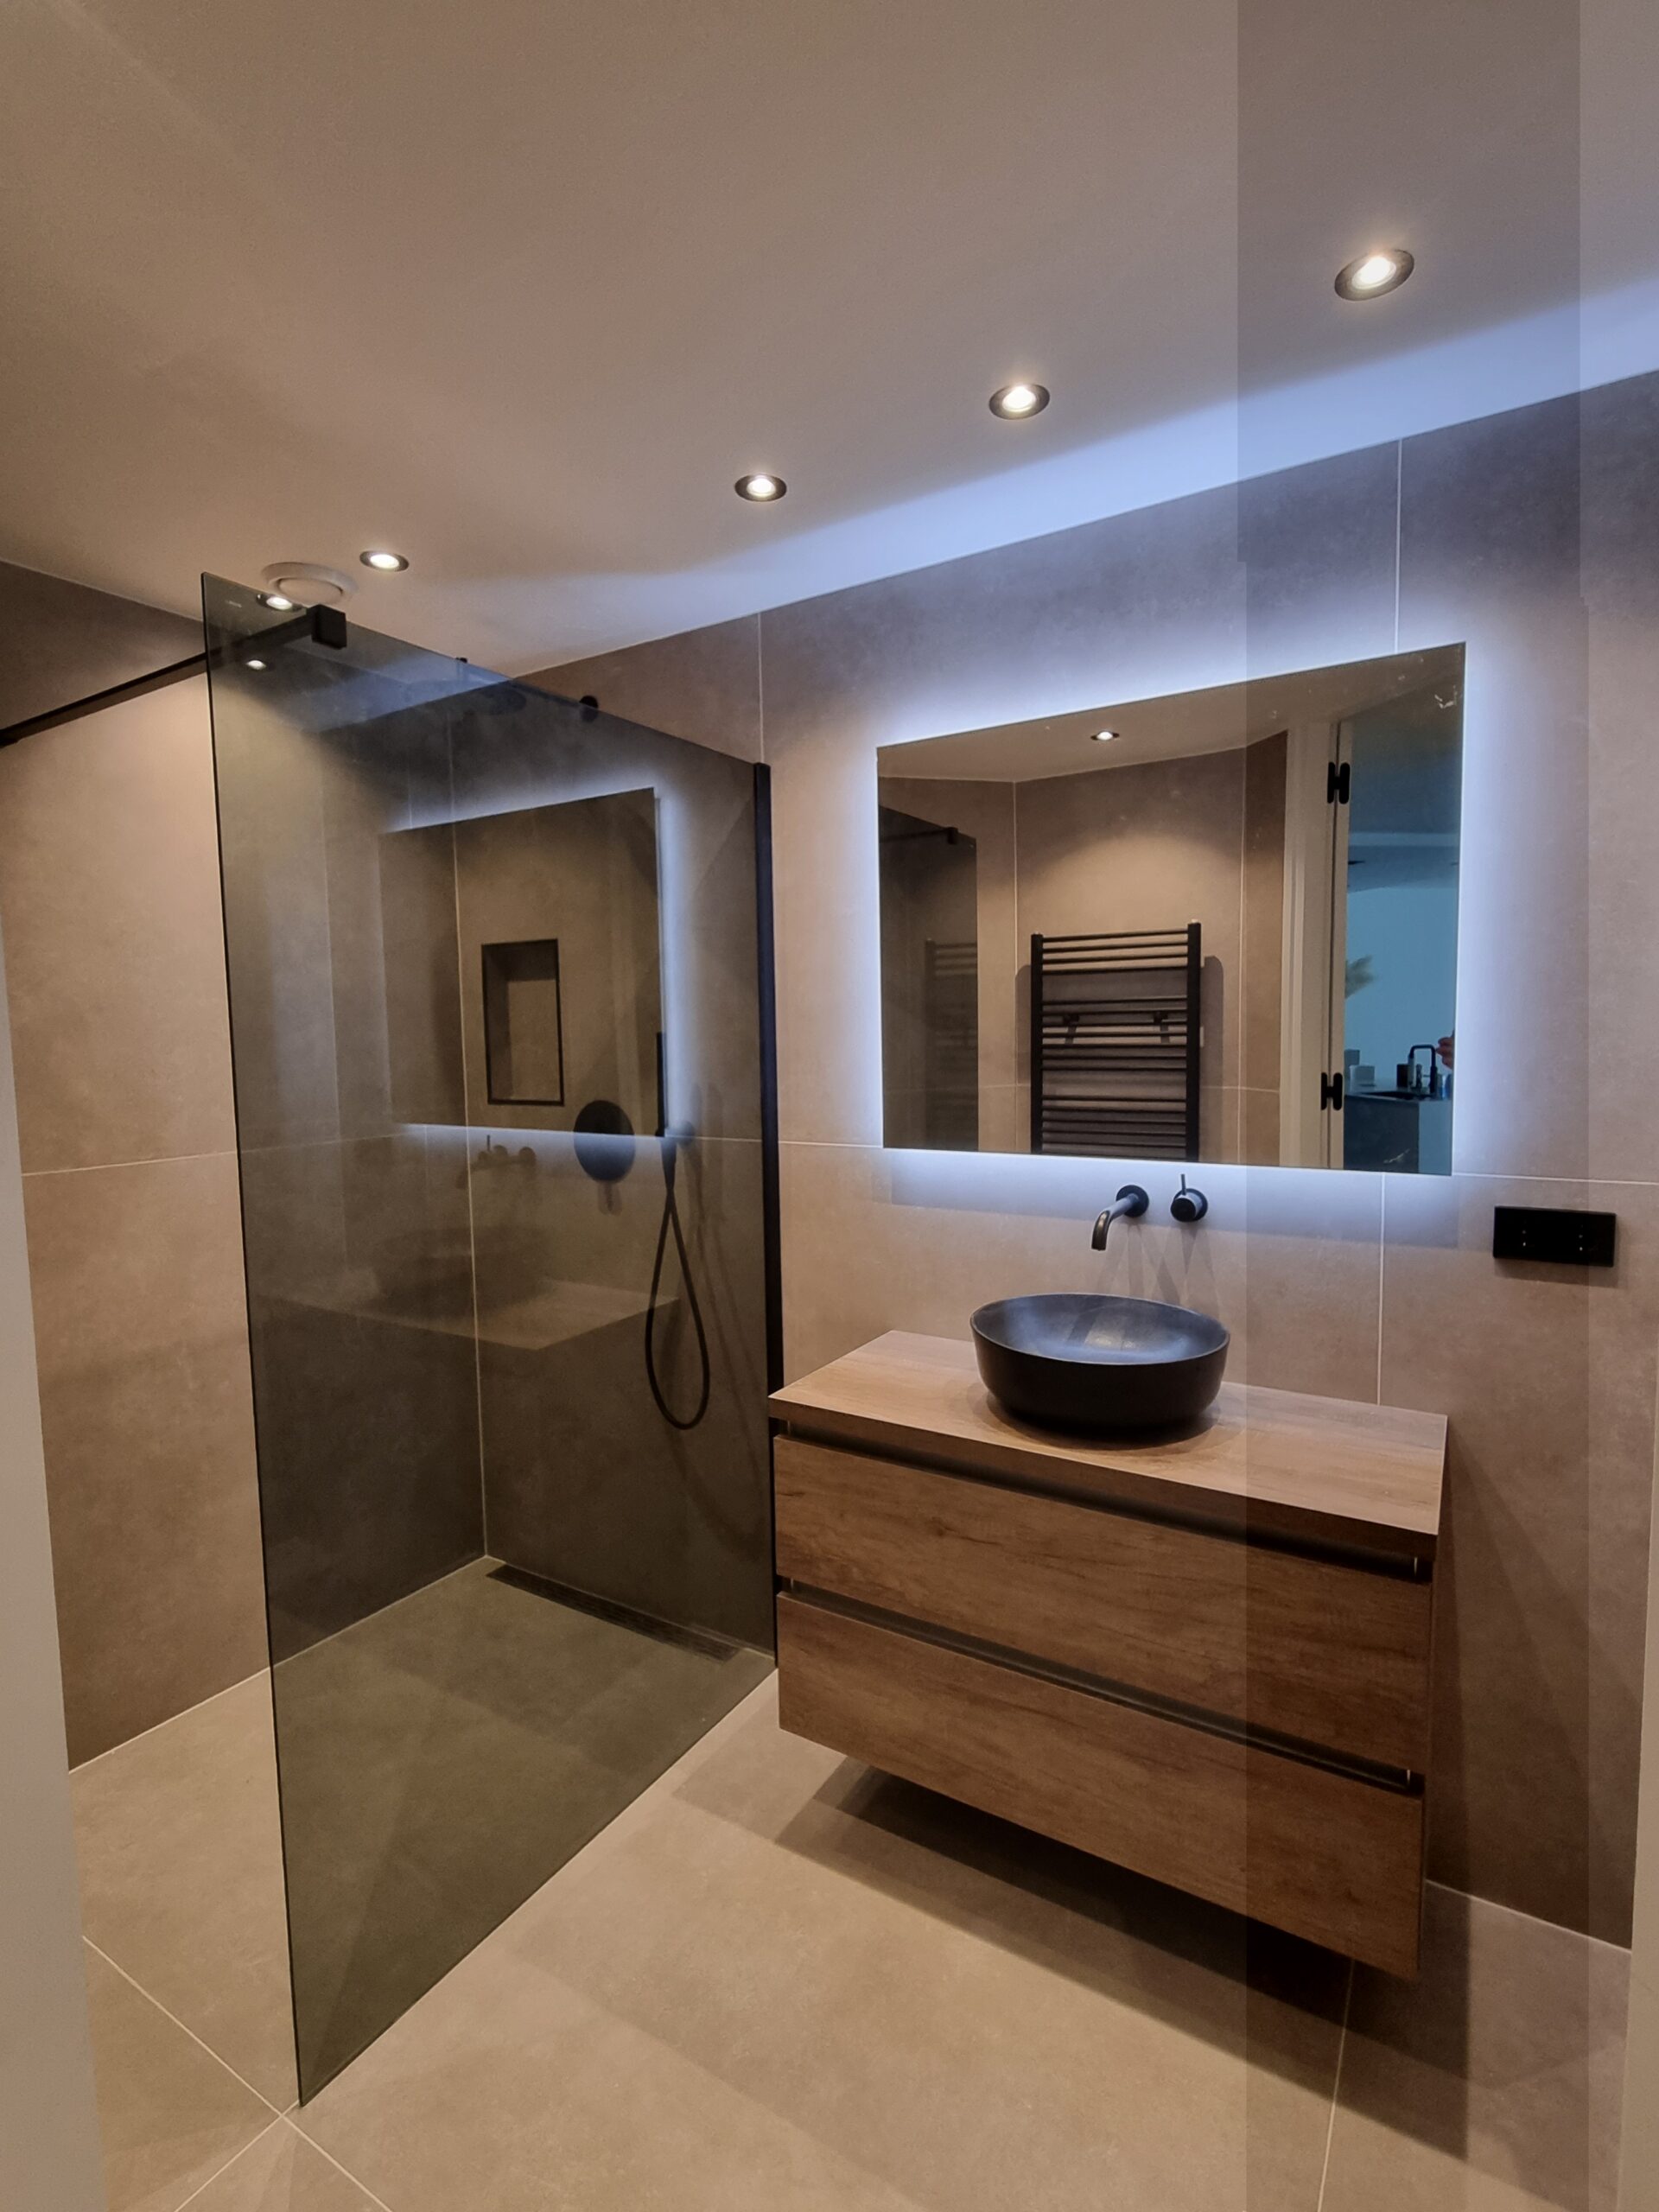 Badkamer inspiratie: grote tegels, inloopdouche, verlichte spiegel en inbouw spots.